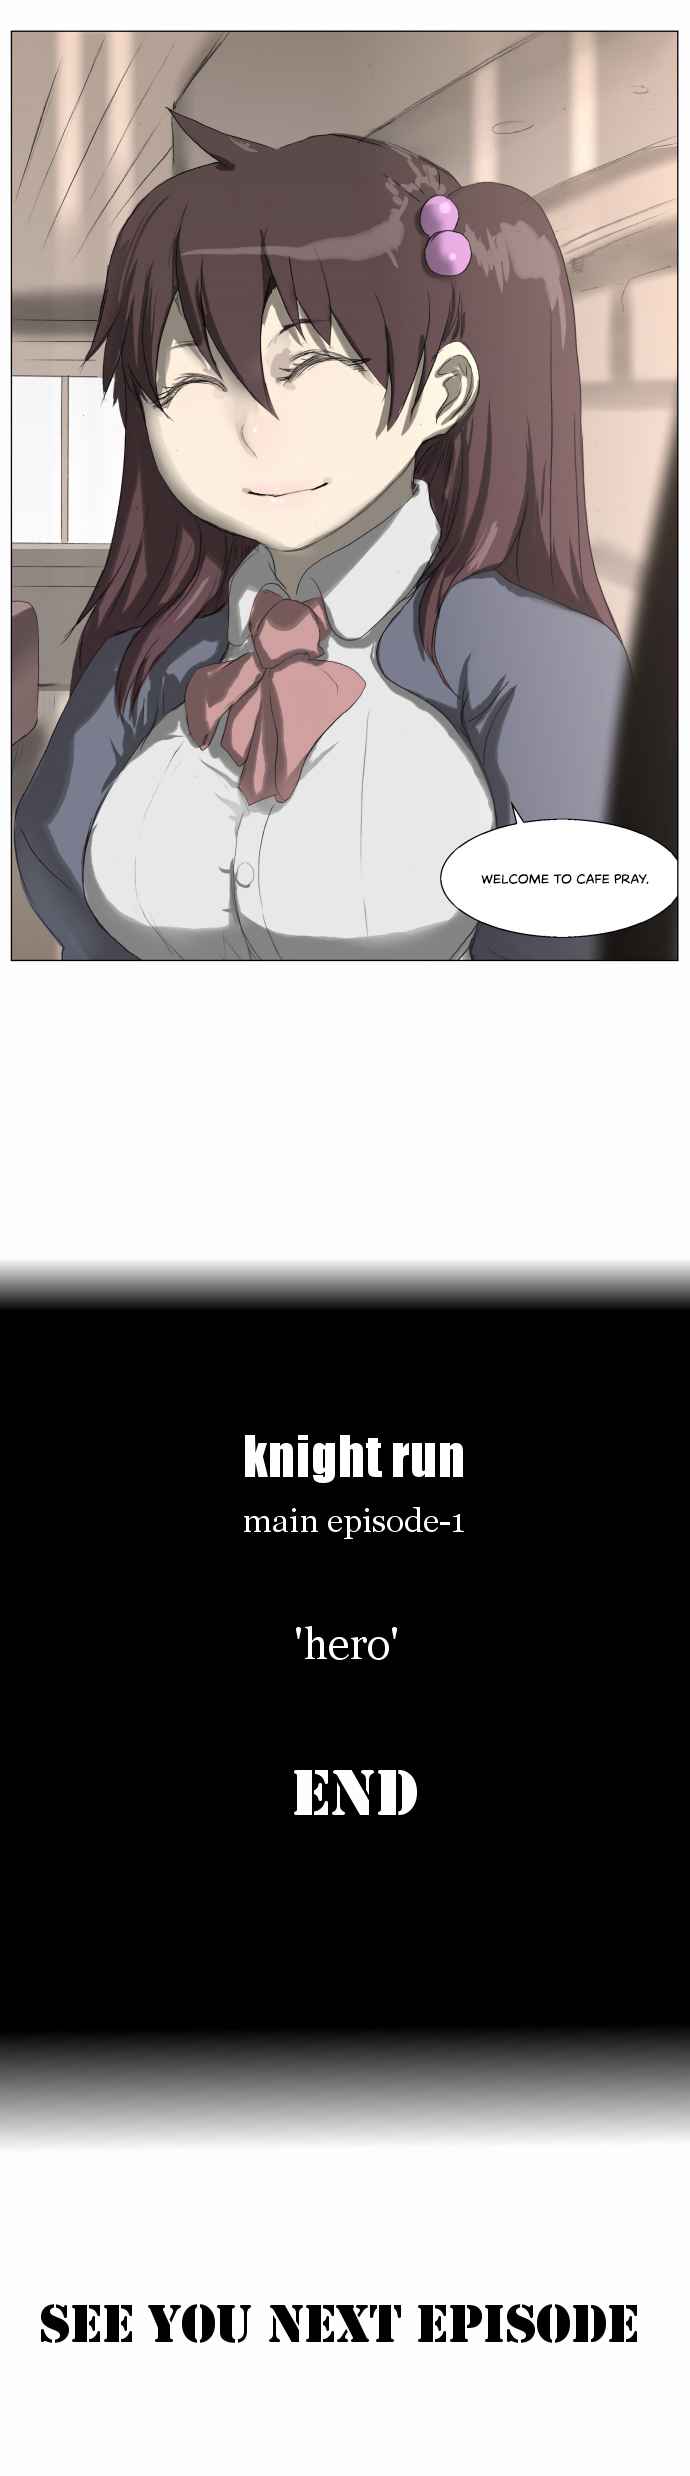 Knight Run Vol. 3 Ch. 191 Hero Part 22 | End